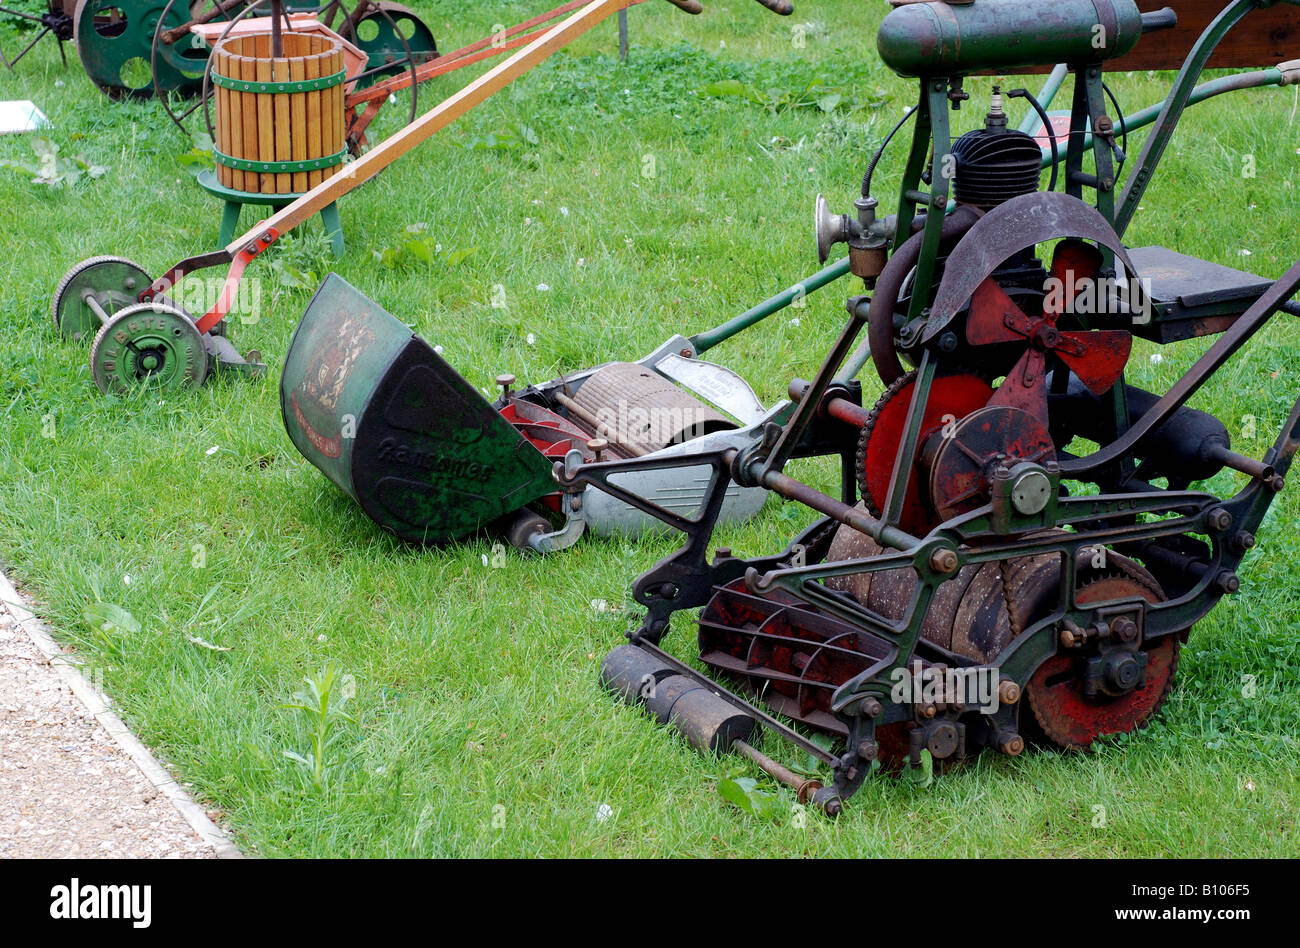 Antique lawnmowers, UK Stock Photo